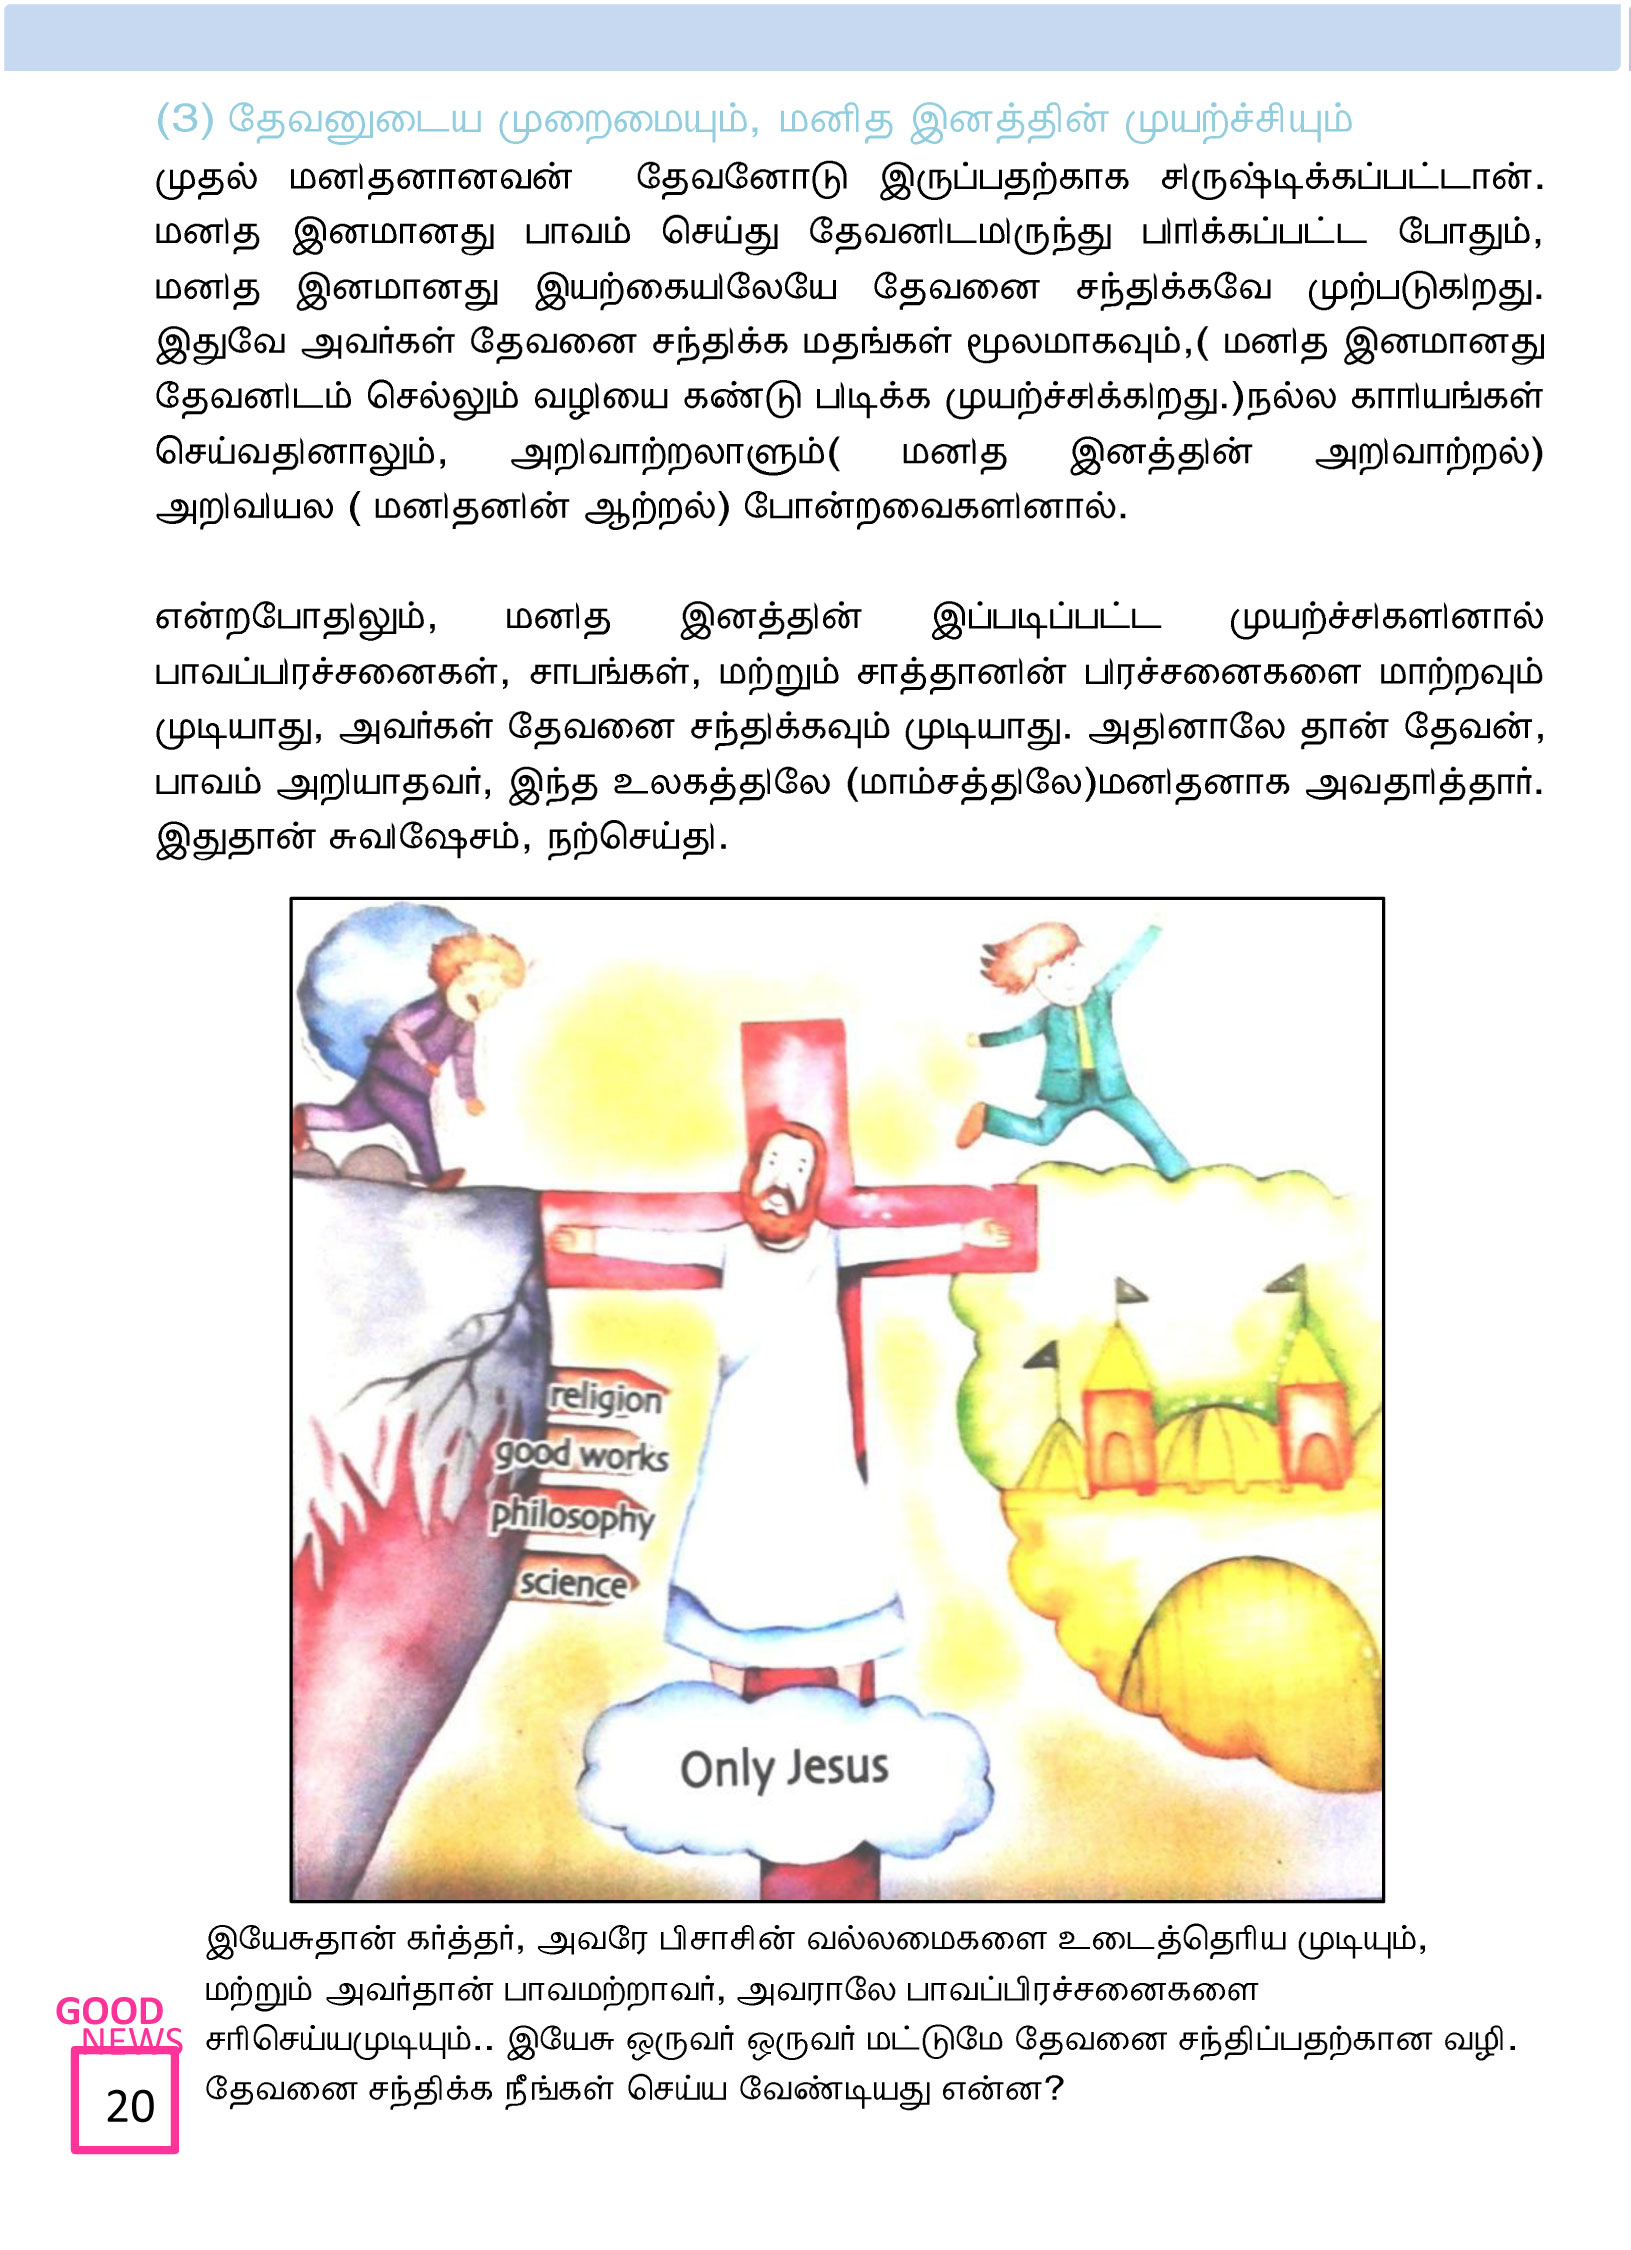 Tamil-Evangelism-Book-Pdf-3-20.jpg